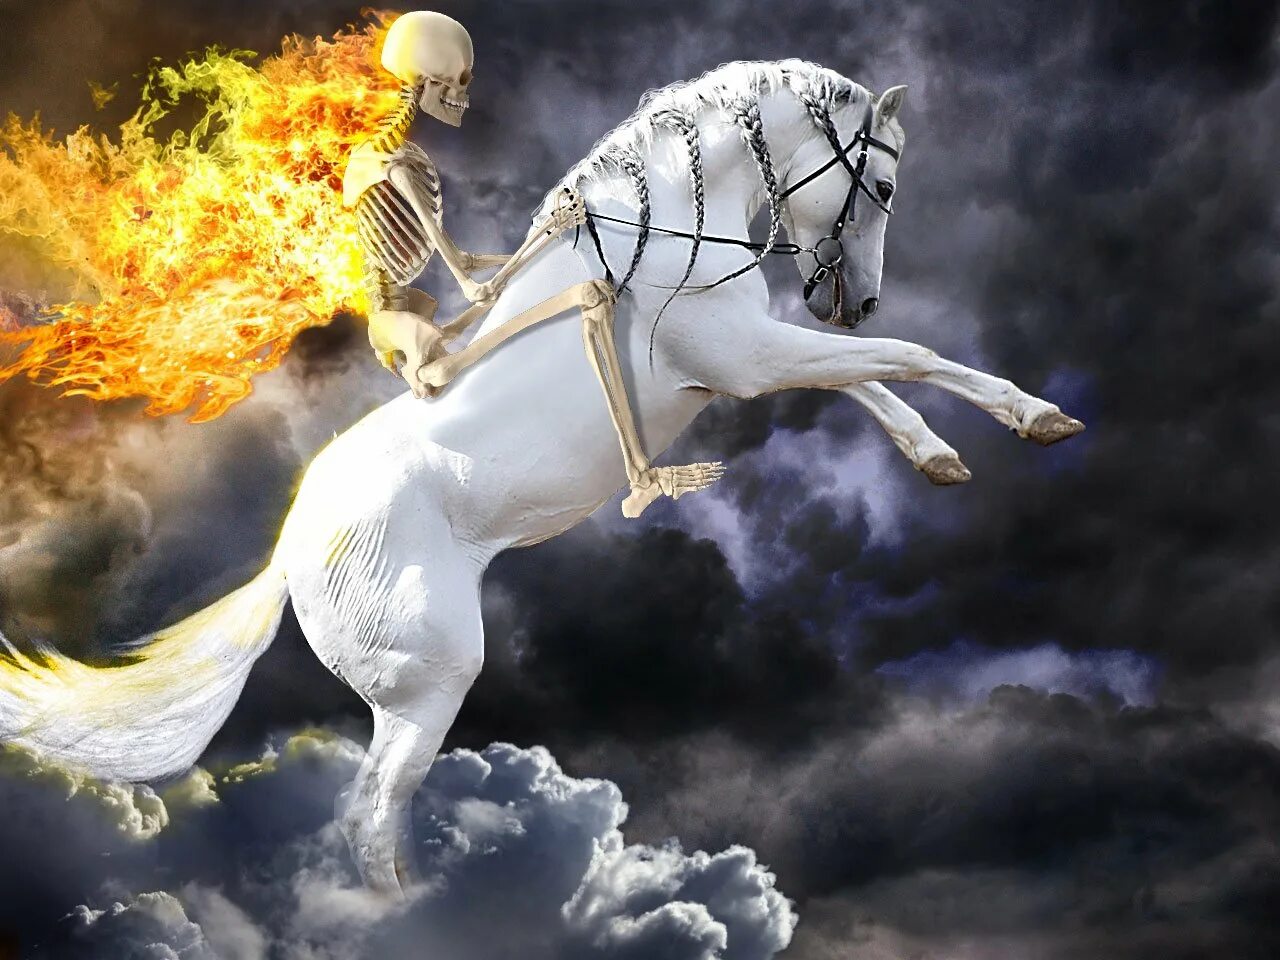 Бледный конь апокалипсиса. Бледный конь всадник апокалипсиса. Всадник на бледном коне апокалипсис. Бледный конь бледный всадник.